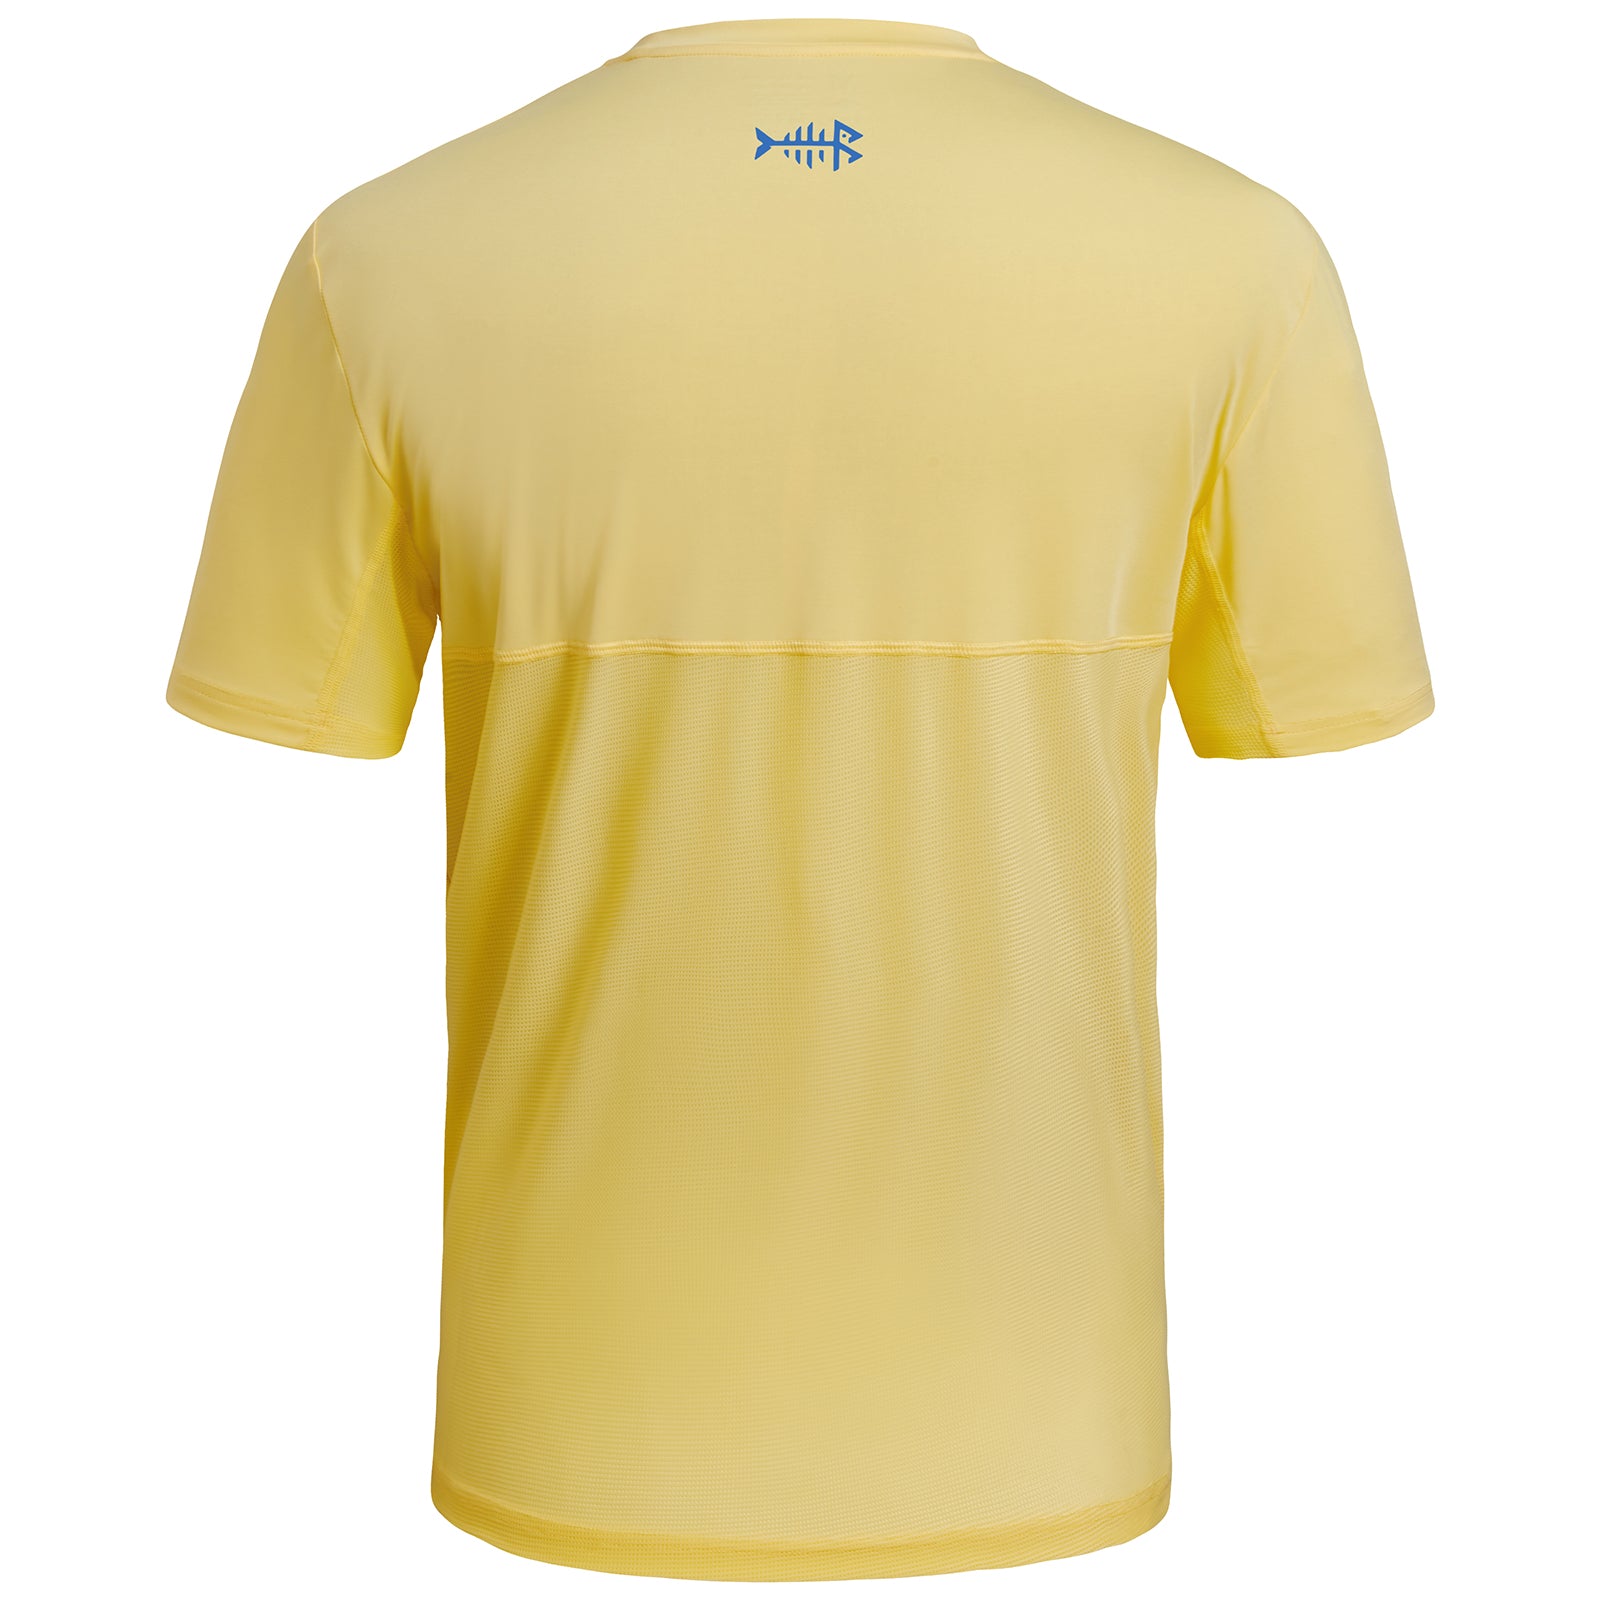 Bassdash Men's UPF 50+ Performance Fishing T-Shirt Quick Dry Short